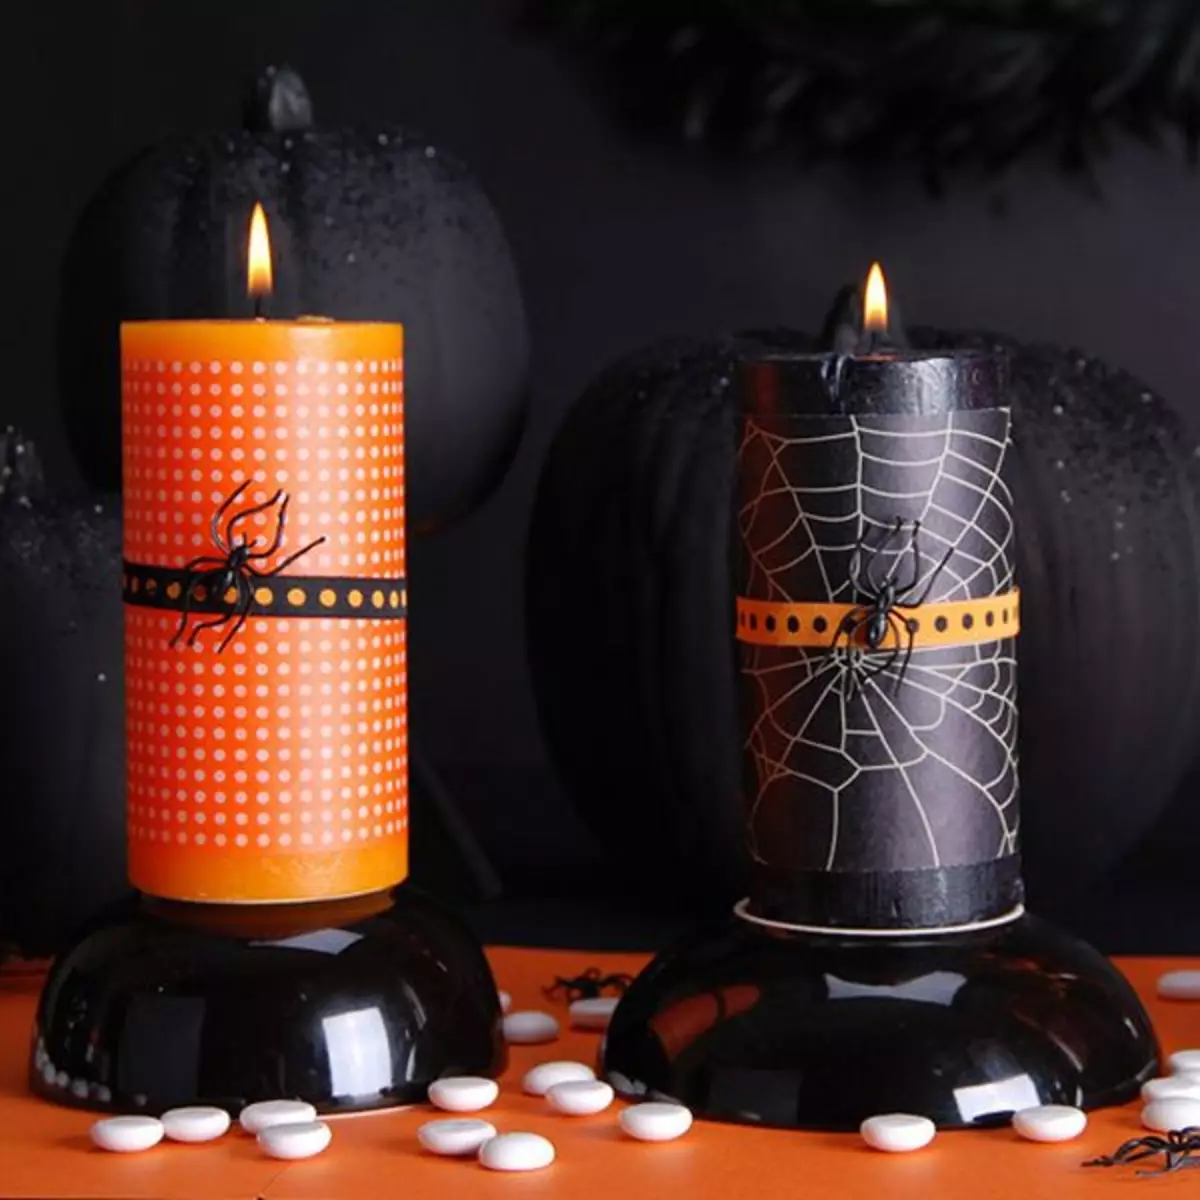 Candlestick nganggo tangan sampeyan dhewe saka jar kaca: ide ing Halloween